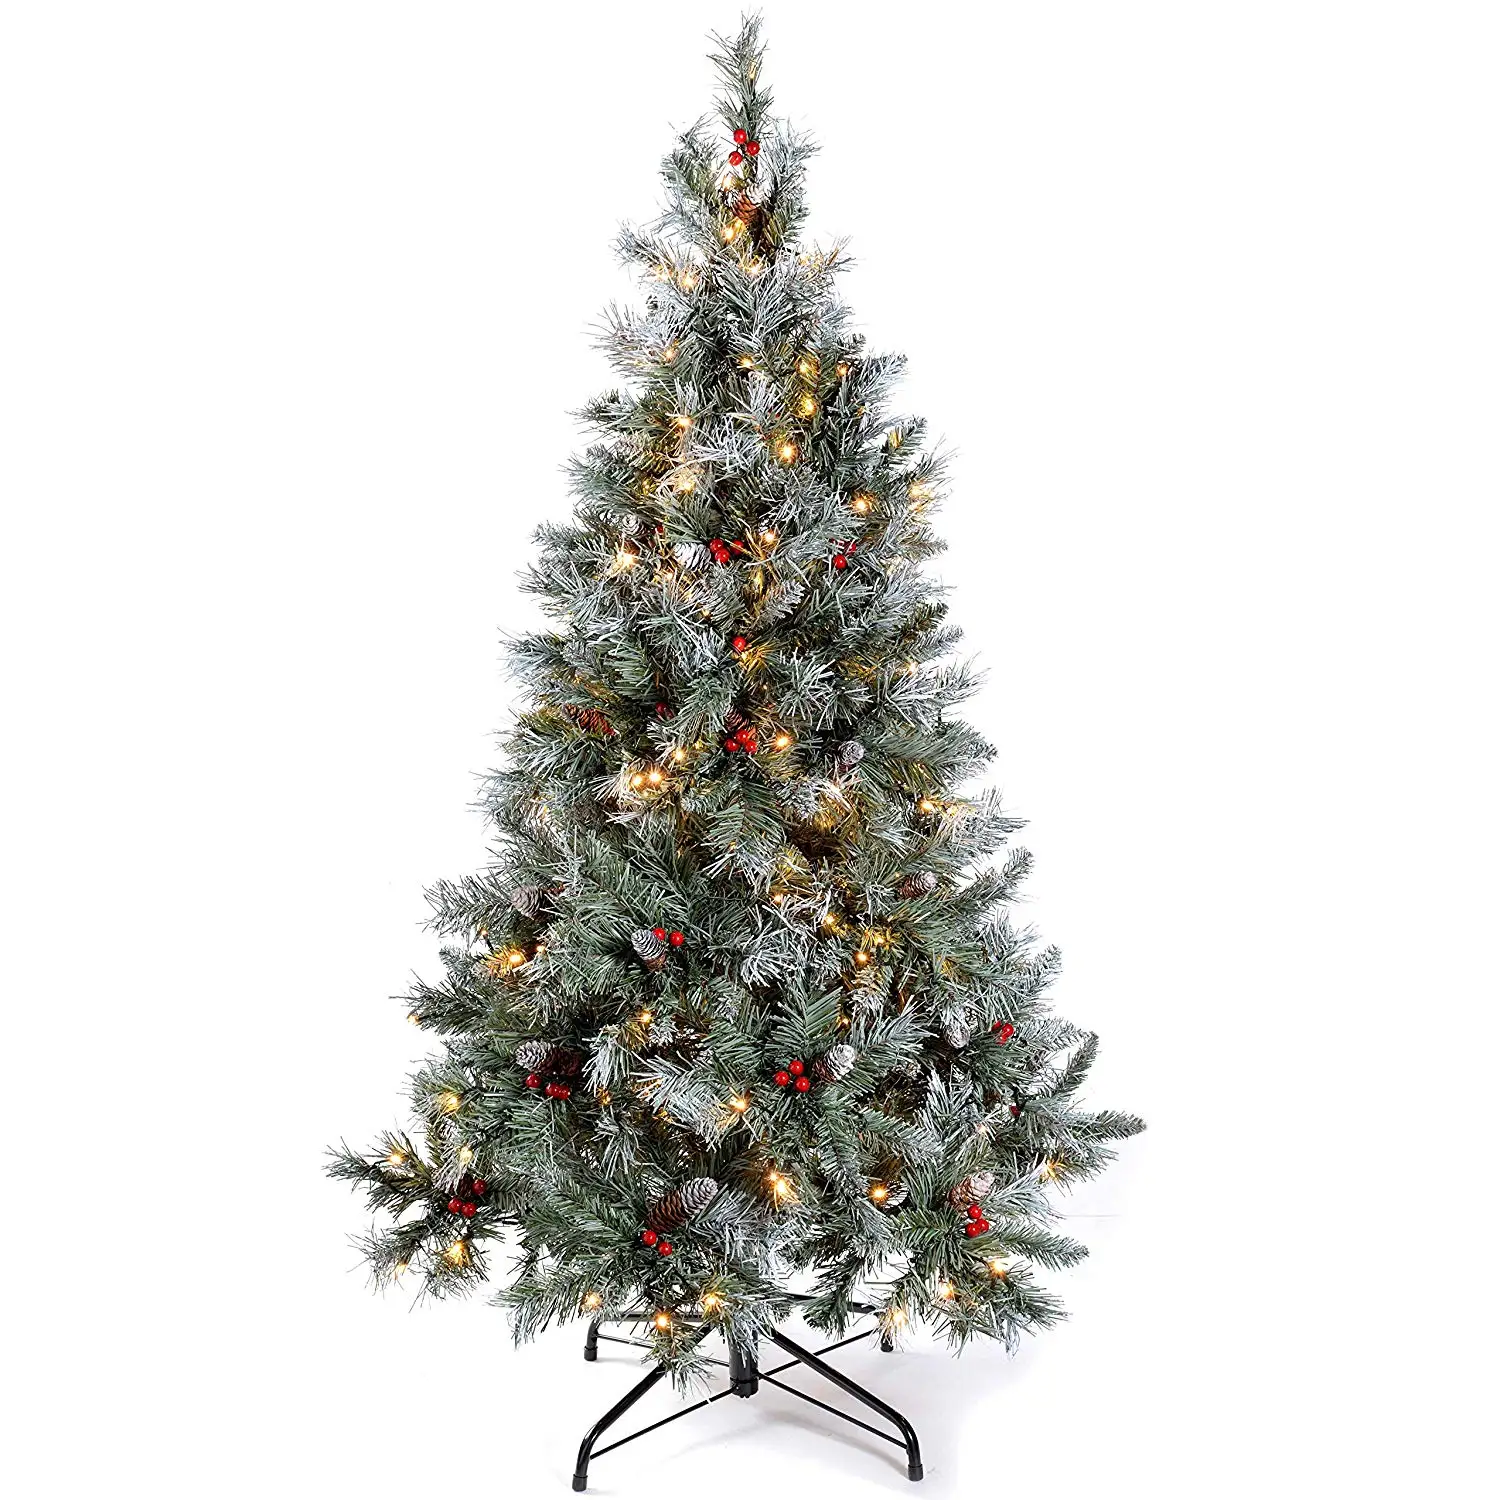 Plastic Rotating Christmas Tree Stand Buy Rotating Tree